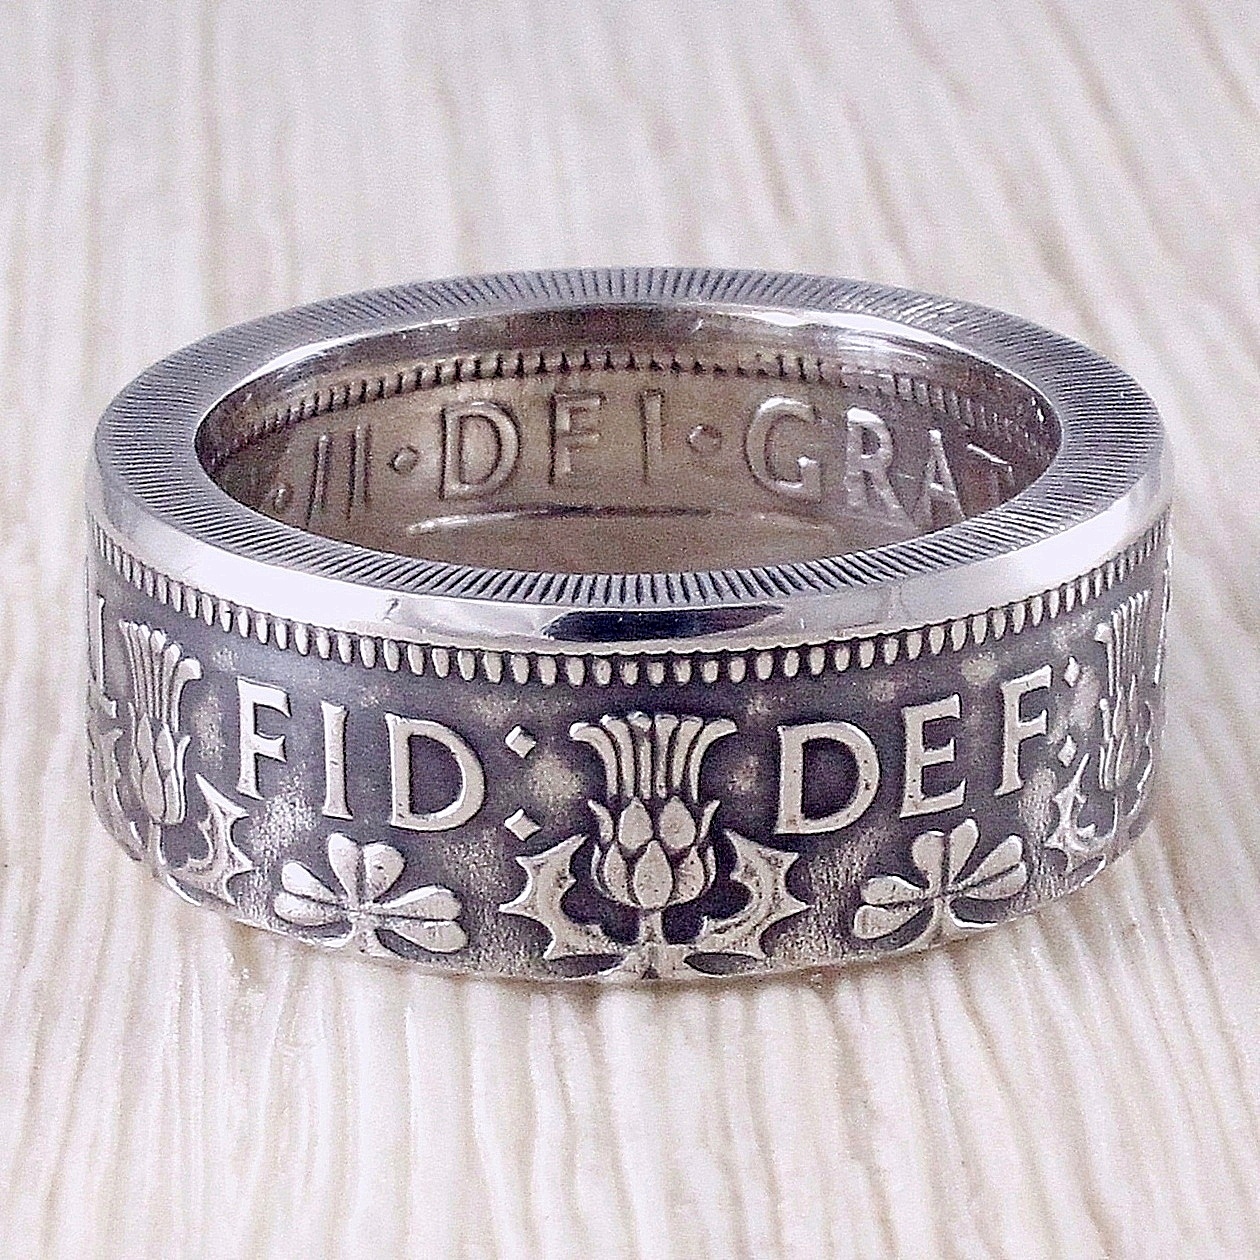 Кольцо из монеты (Великобритания) в магазине «Кольца из Монет Real Rings»на Ламбада-маркете